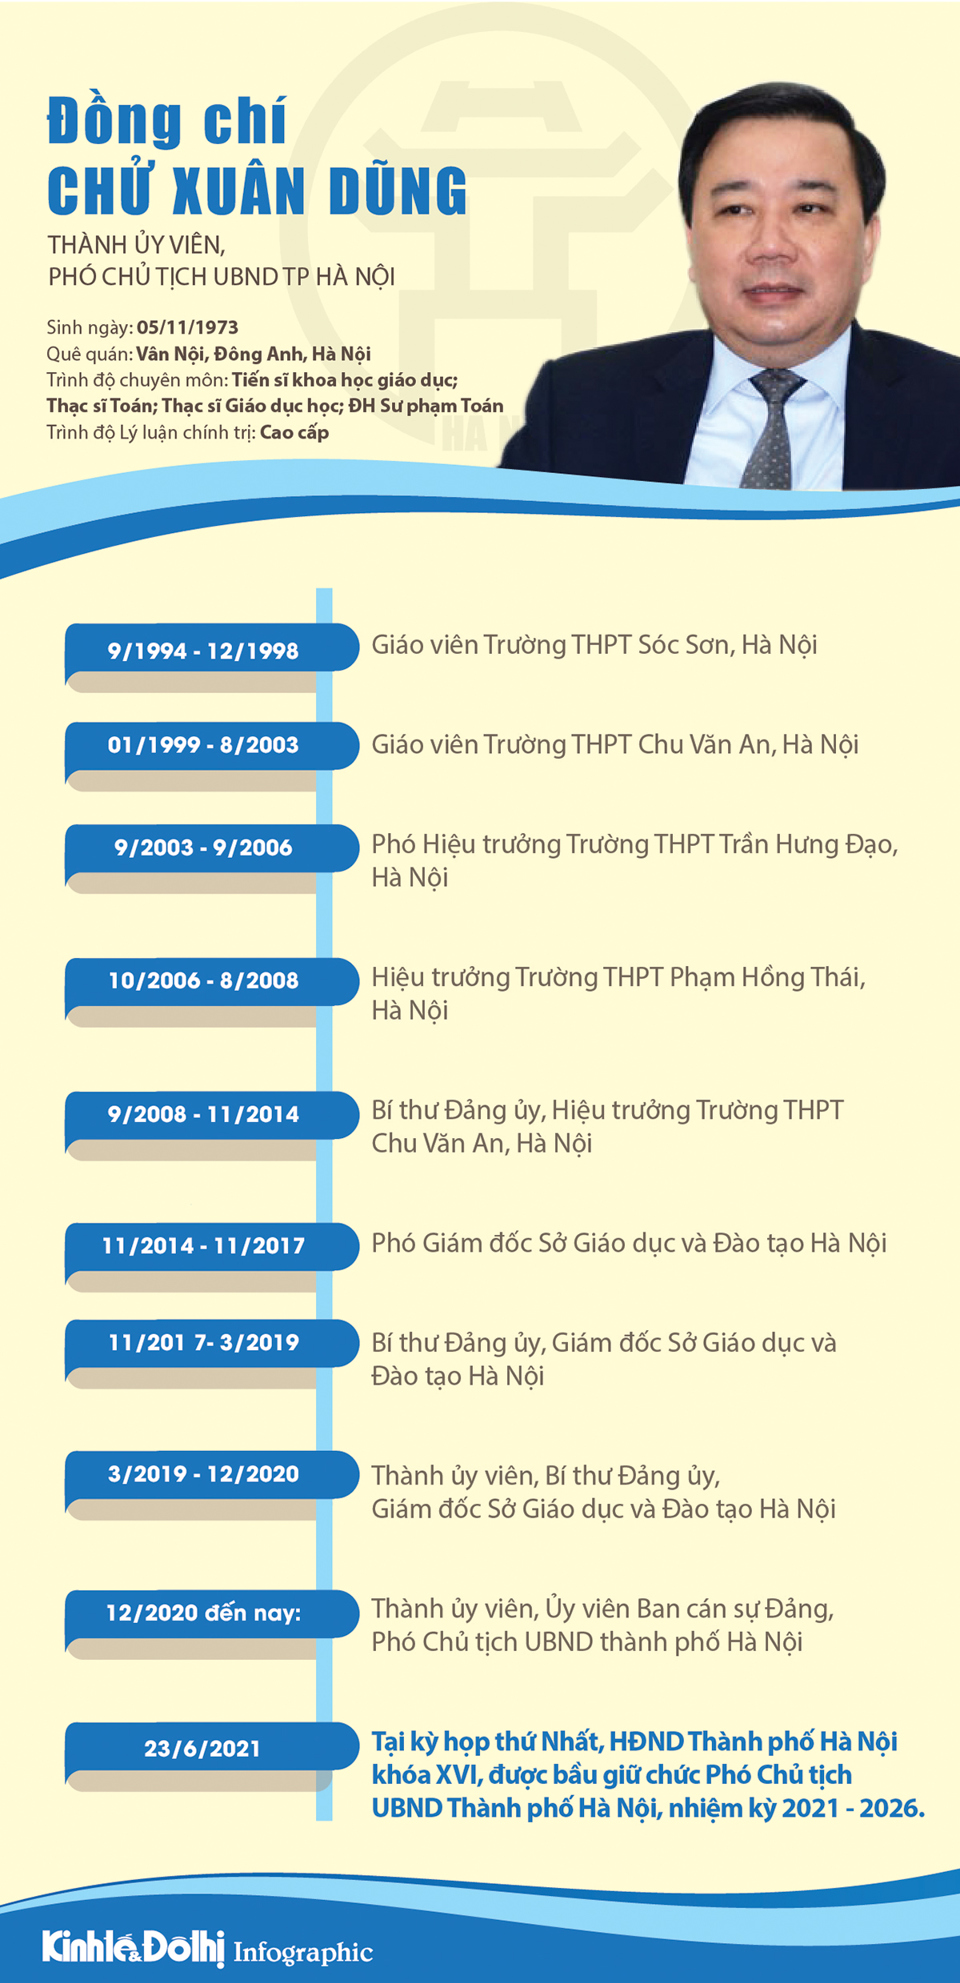 [Infographic] Chân dung Phó Chủ tịch UBND TP Hà Nội Chử Xuân Dũng - Ảnh 1